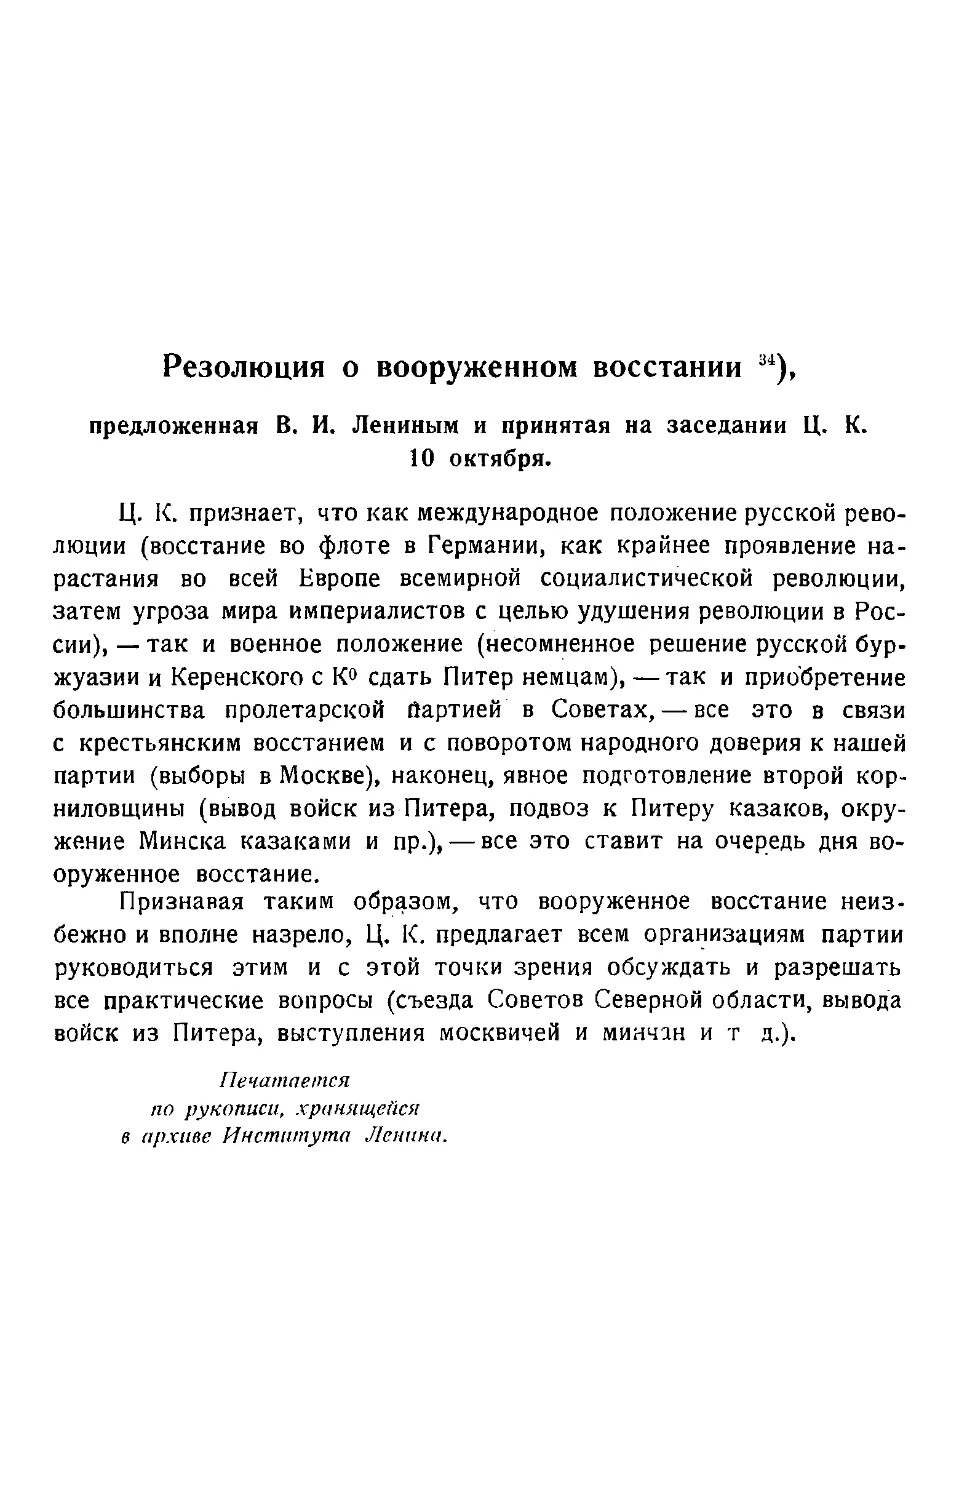 Резолюция о вооруженном восстании, предложенная В. И. Лениным и принятая на заседании Ц. К. 10 октября.